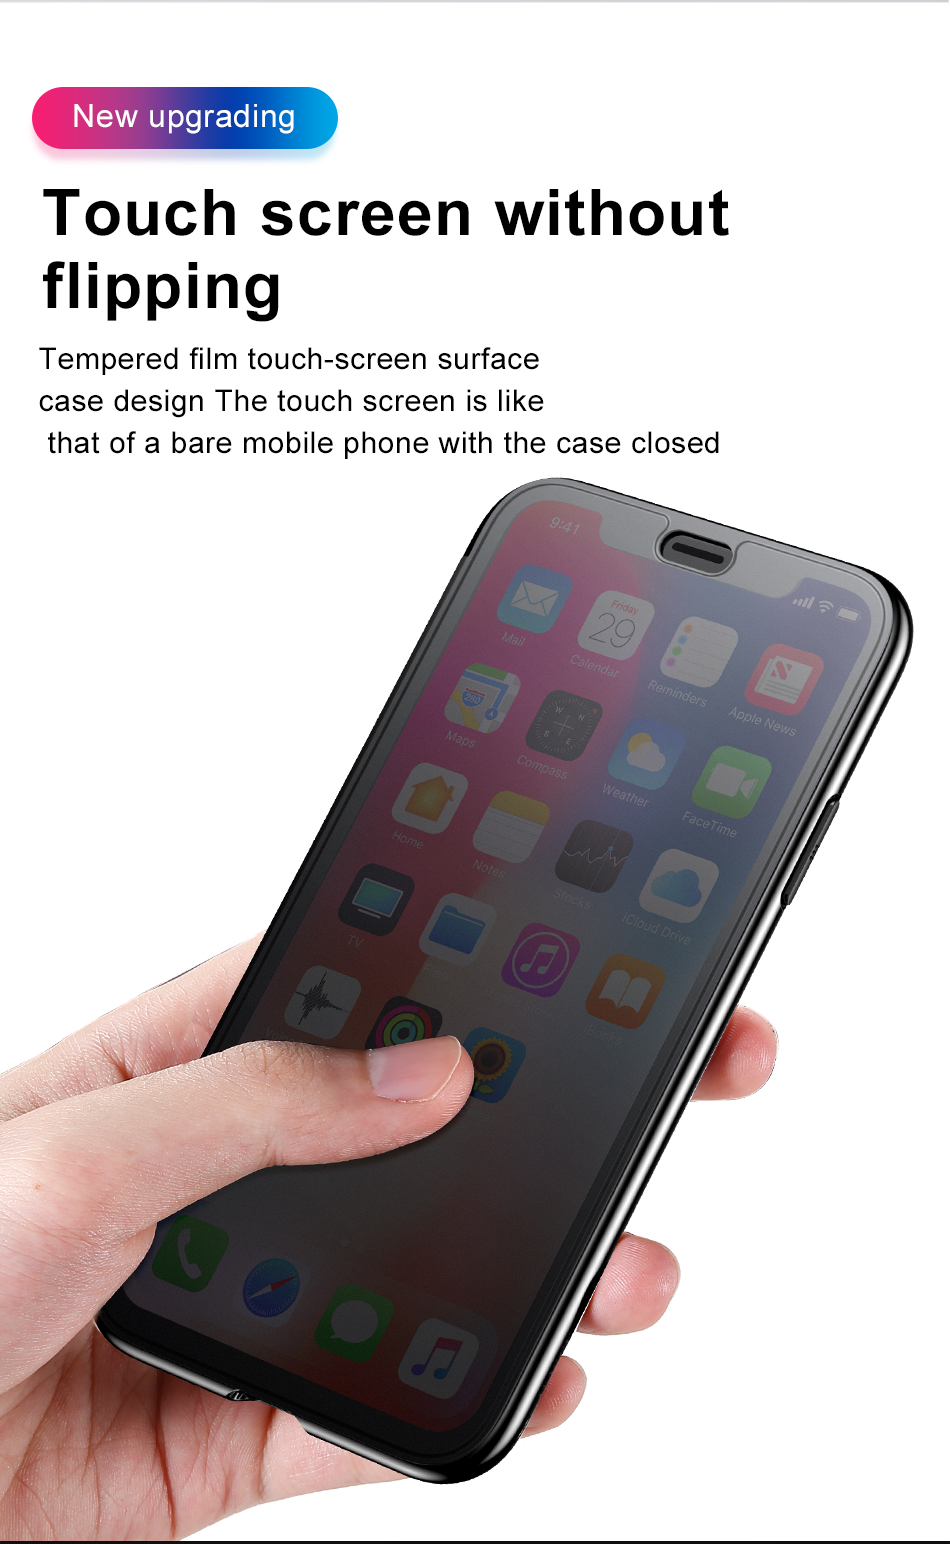 Apple Iphone XR, Baseus Érinthető Védőtok, 6,1″, Fekete